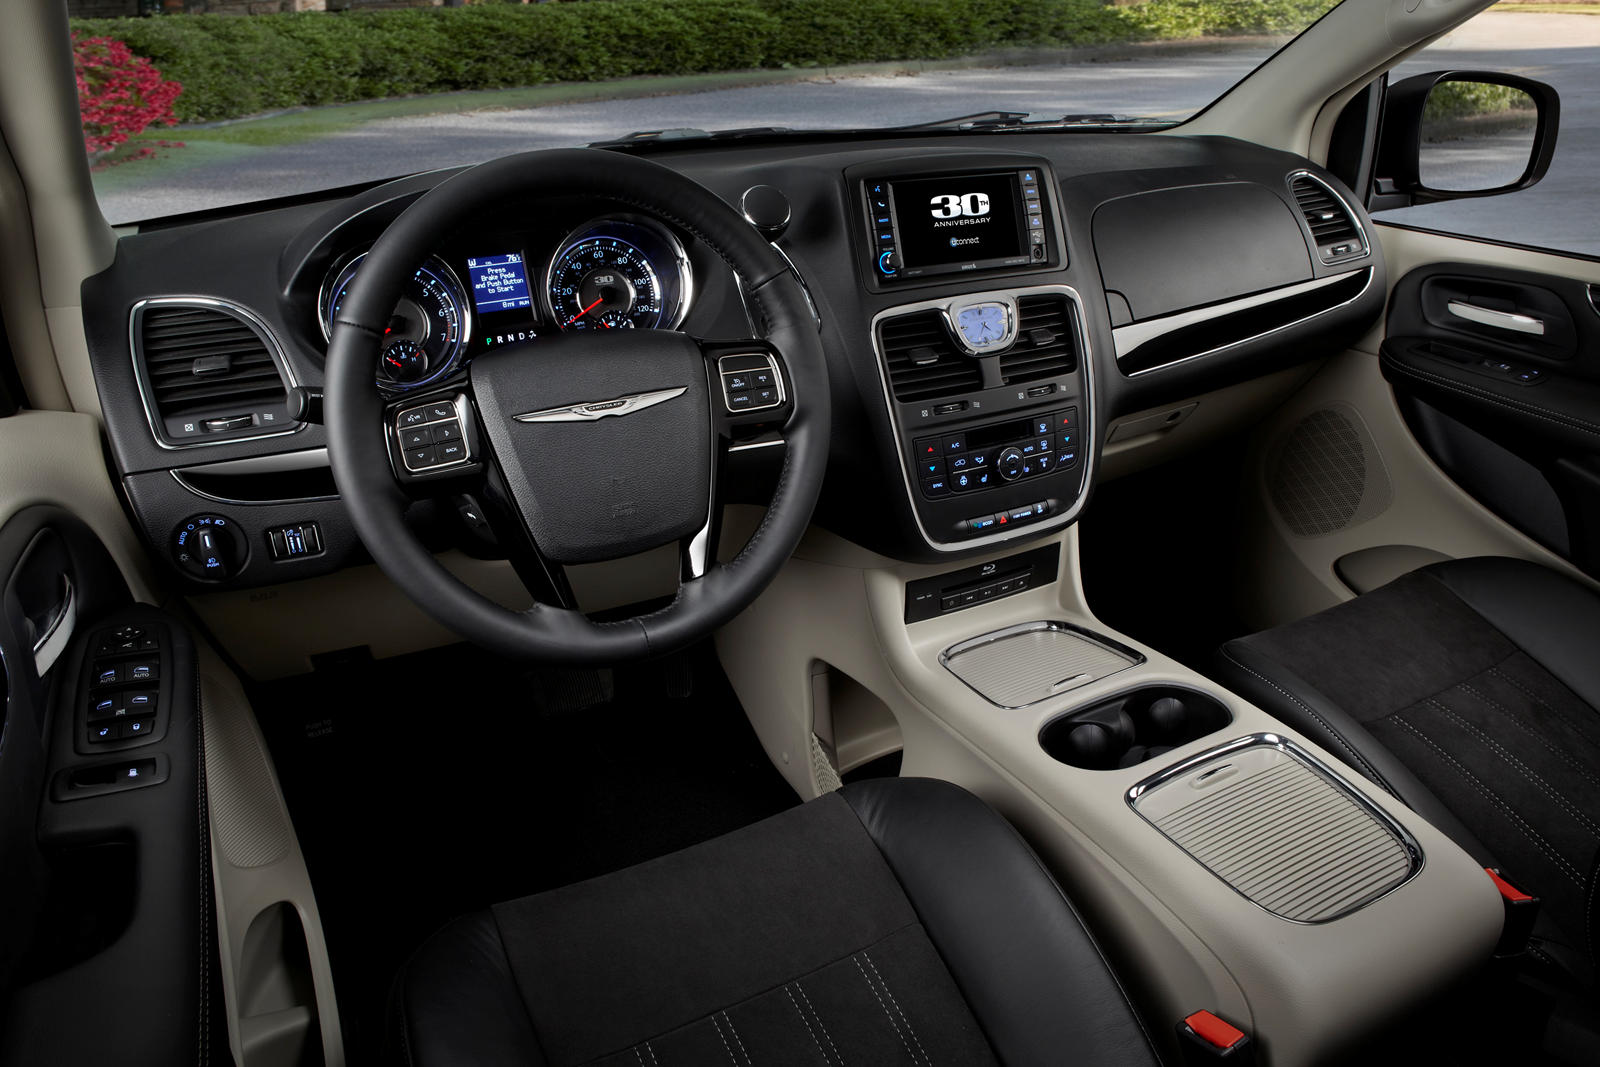 2014 Chrysler Town & Country Interior Photos | CarBuzz